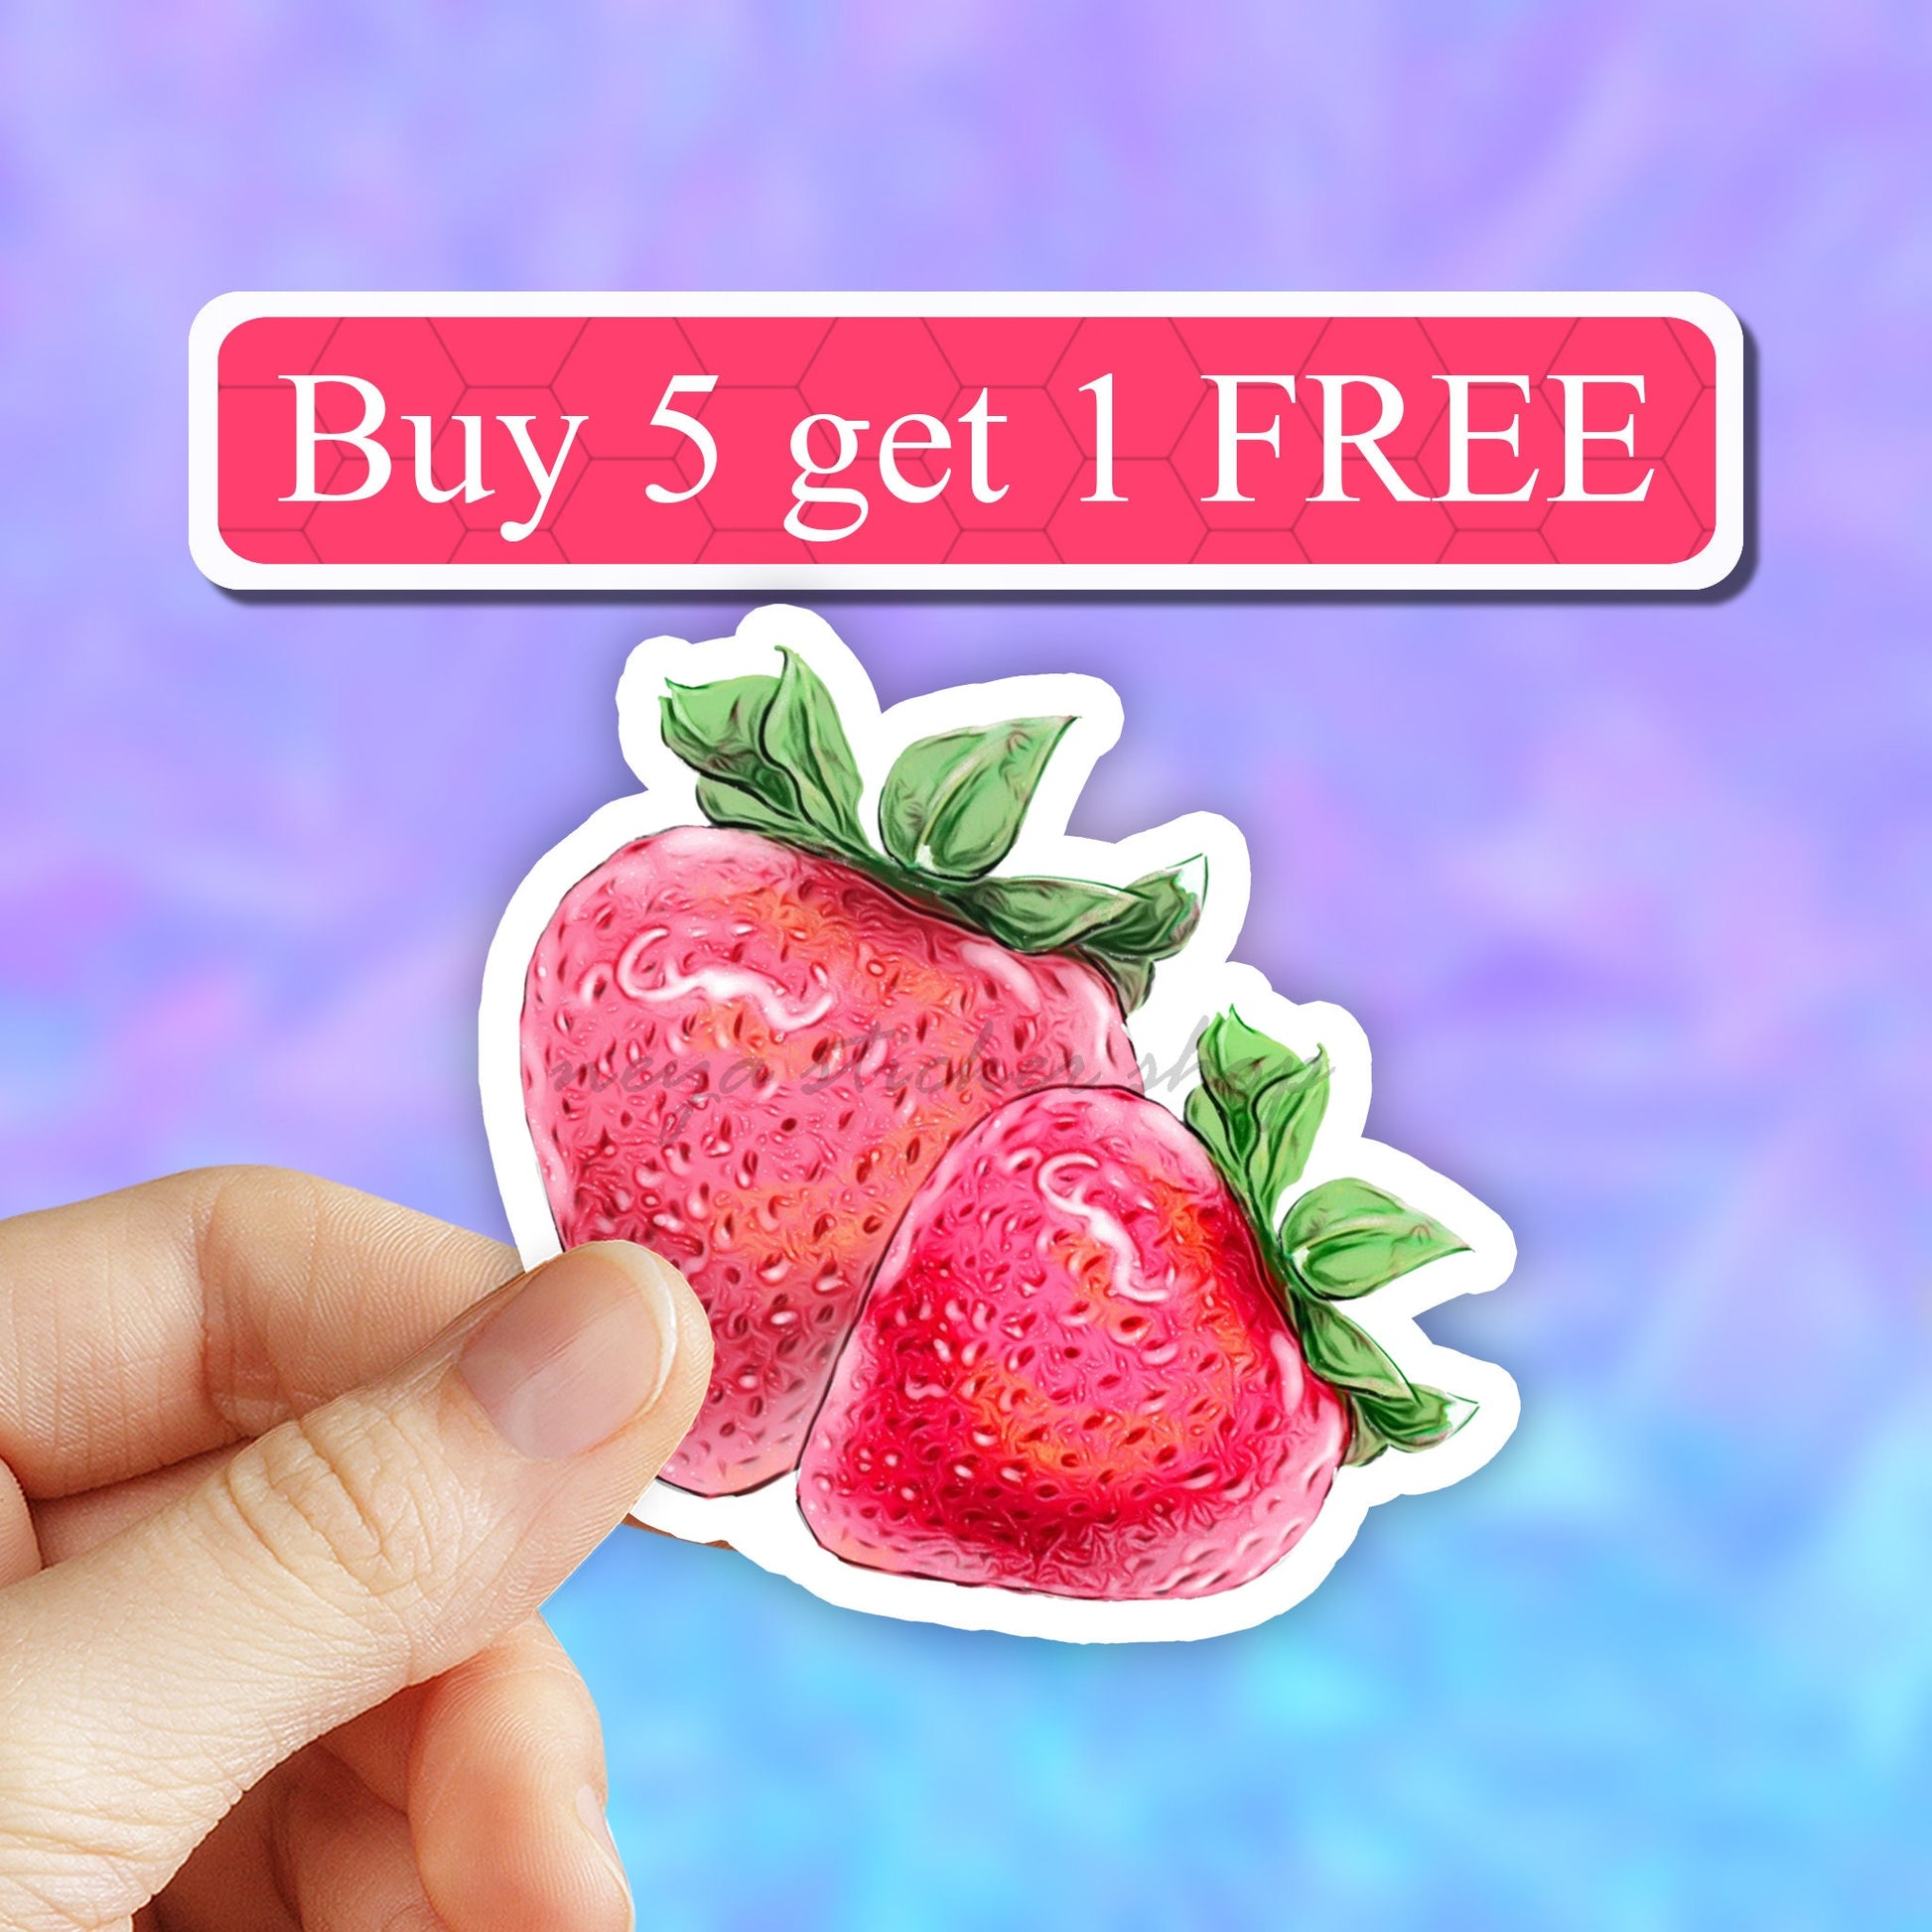 Strawberries Sticker